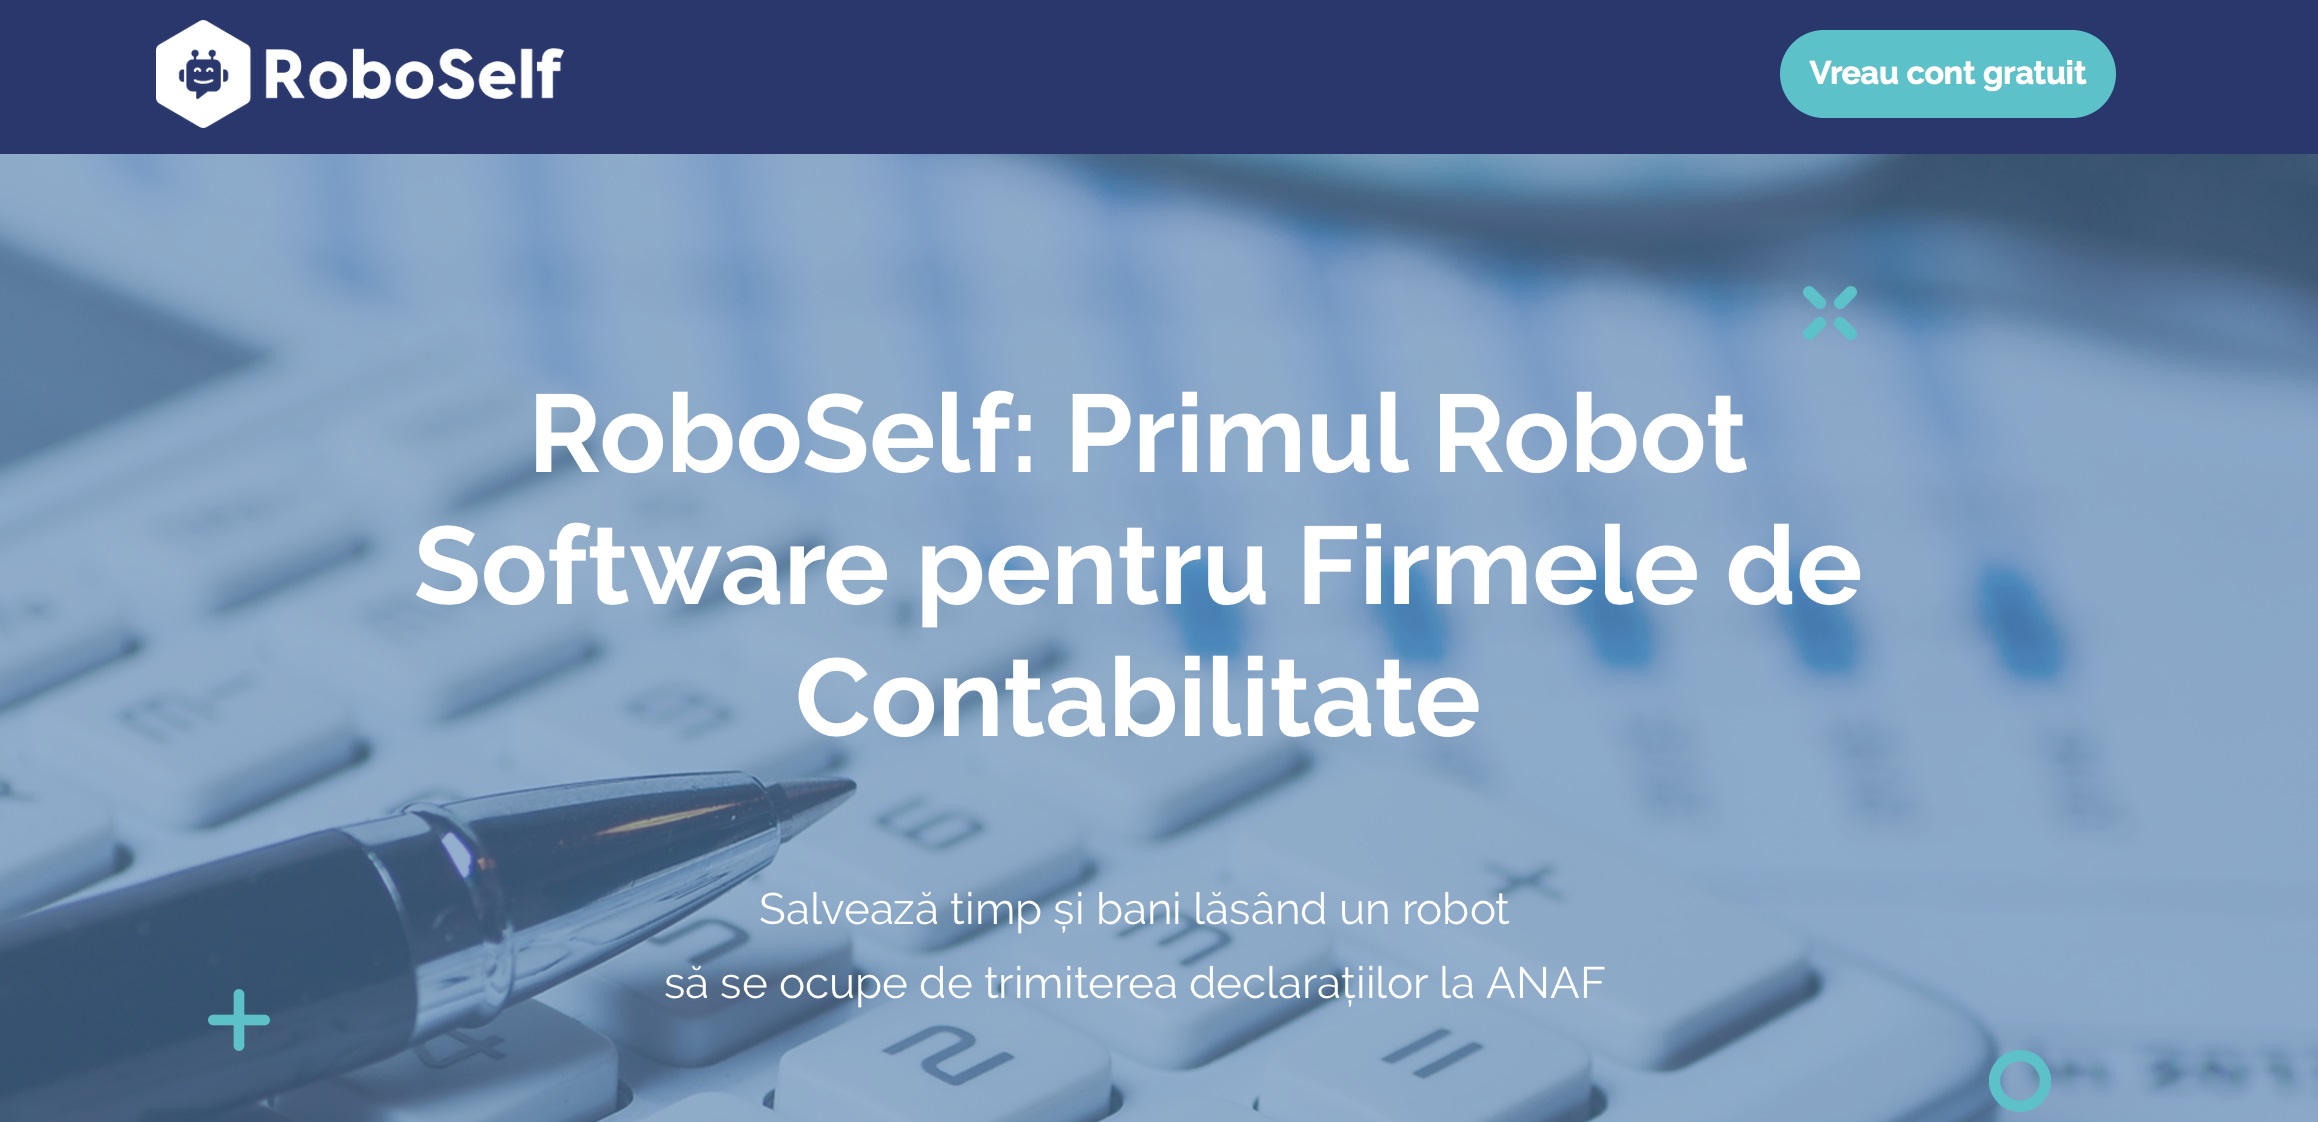 RoboSelf: Primul Robot Software pentru Firmele de Contabilitate